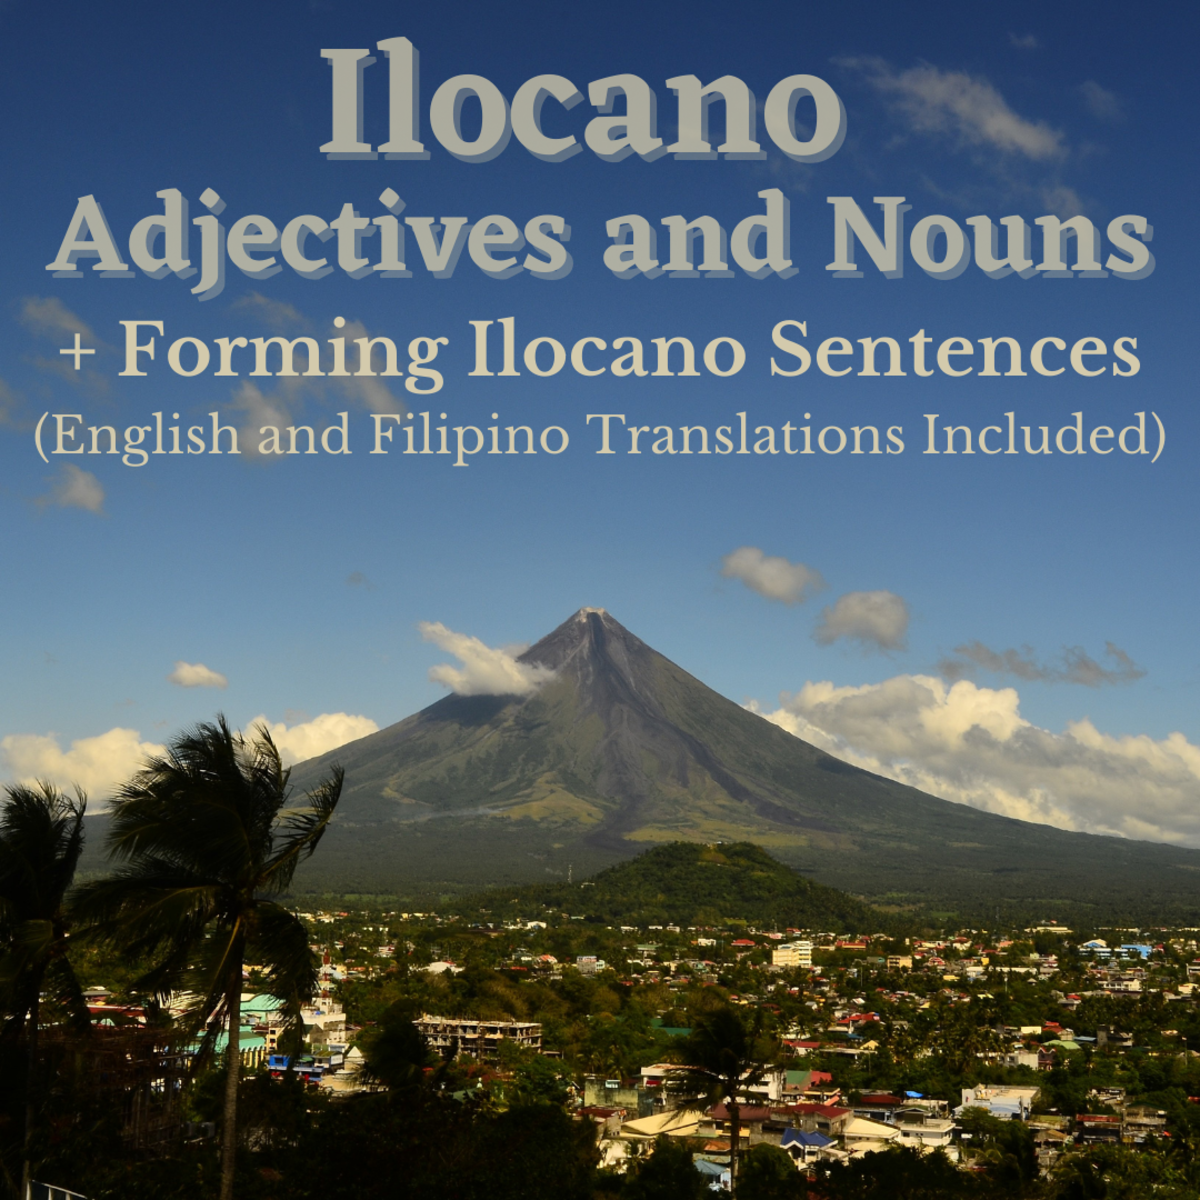 Ilocano Adjectives, Nouns, and Forming Ilocano Sentences